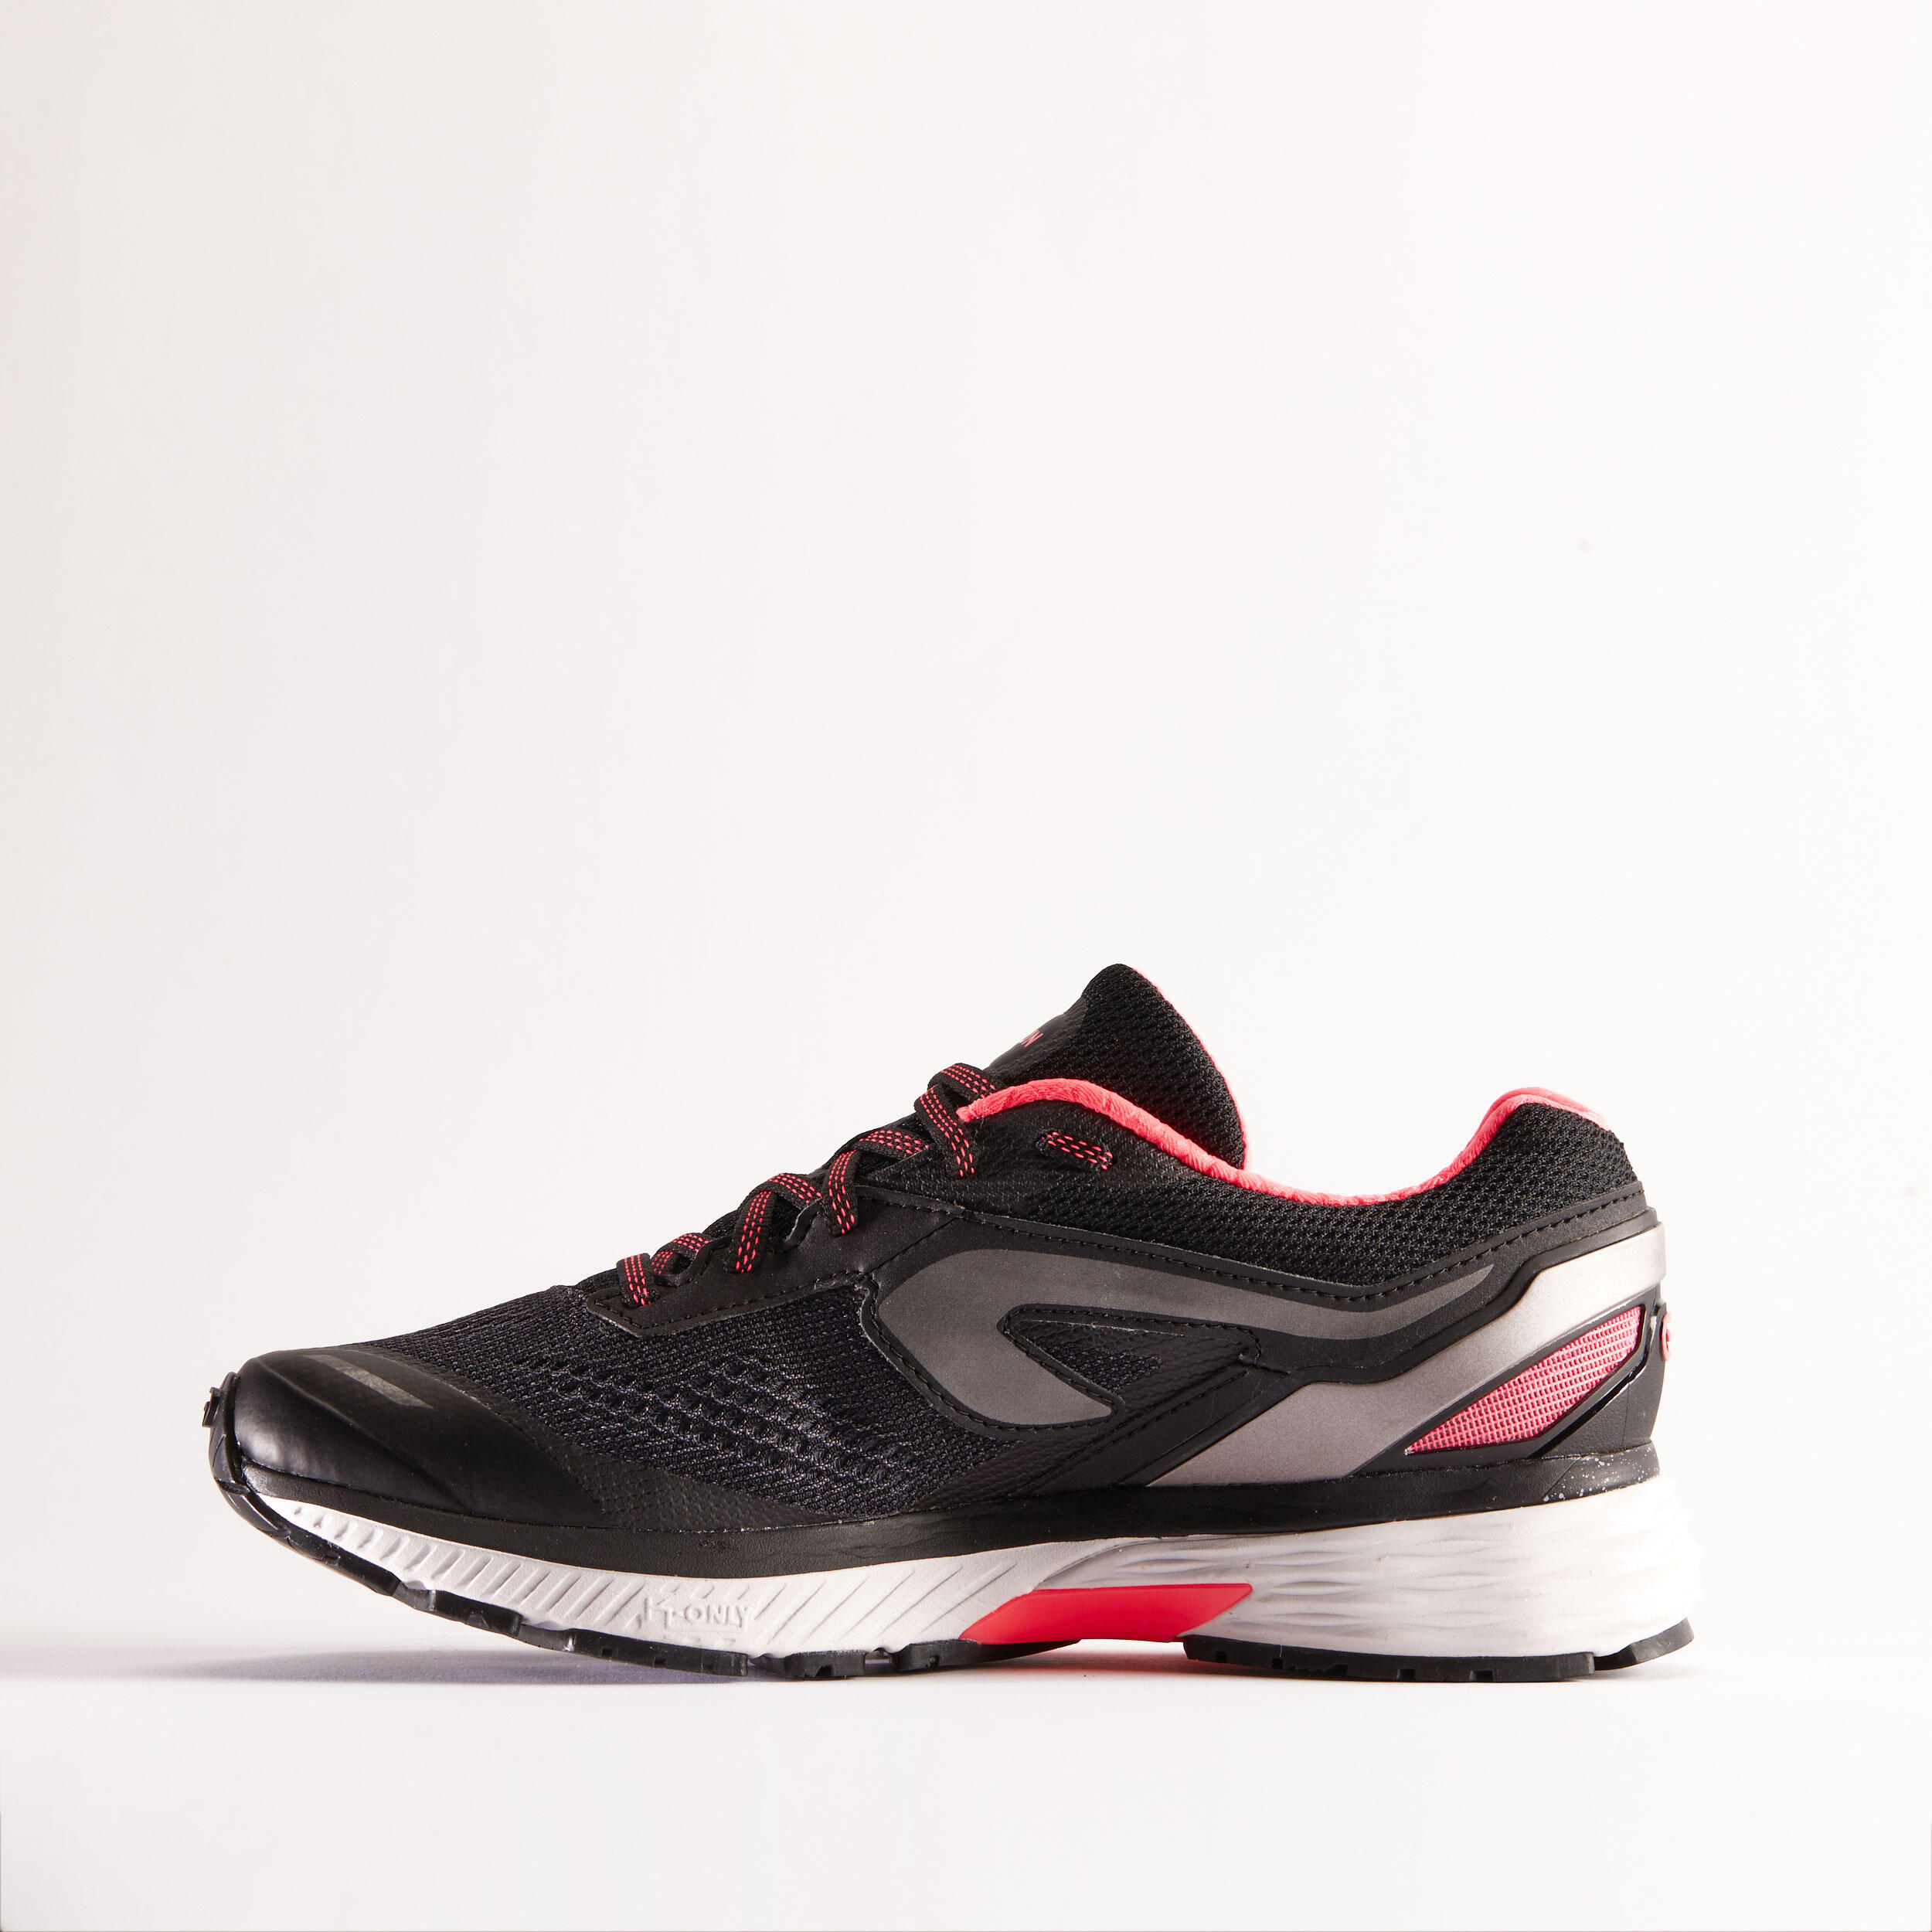 Chaussures de course sur route femmes - Kiprun Long 2 noir/rose - KIPRUN